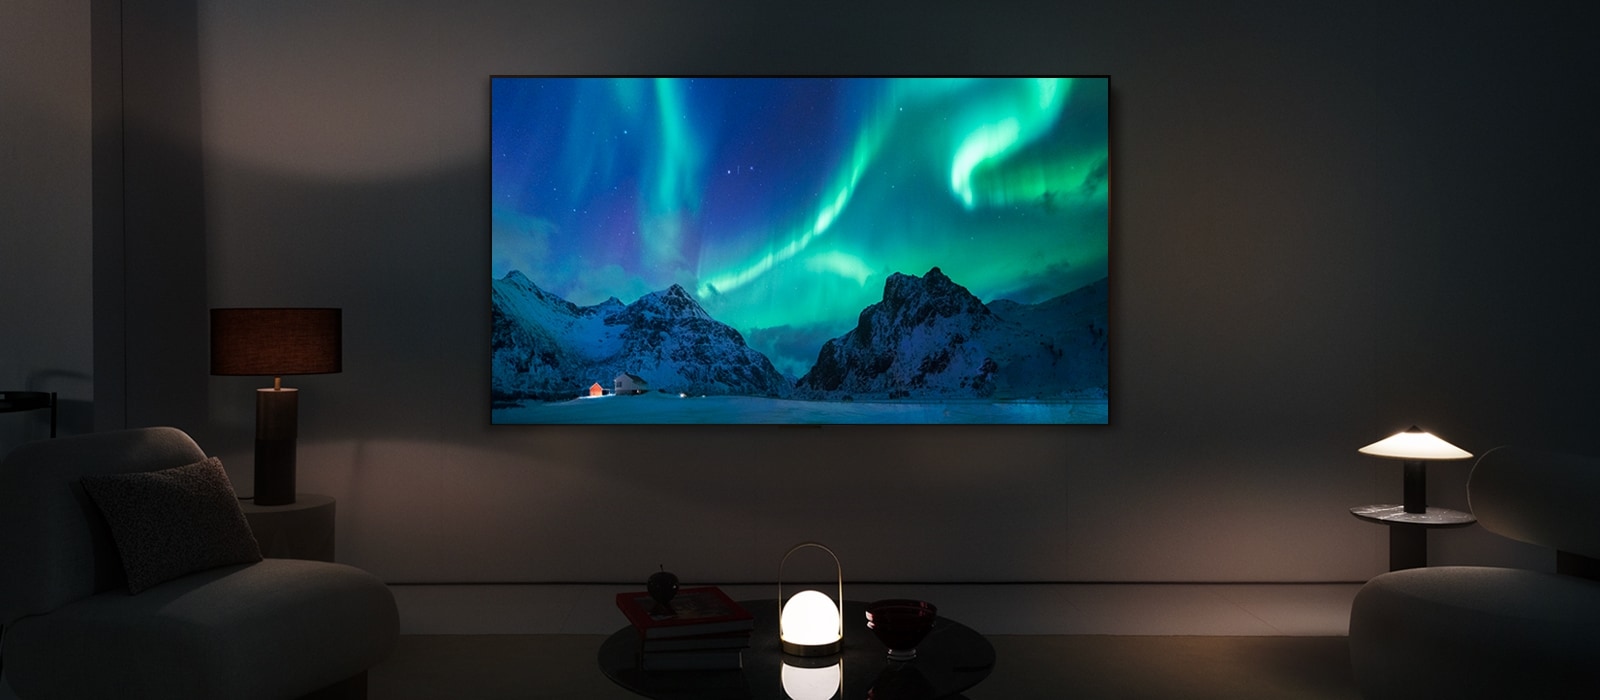 LG OLED TV dans un espace de vie moderne pendant la nuit. L'image de l'aurore boréale est affichée avec les niveaux de luminosité idéaux.